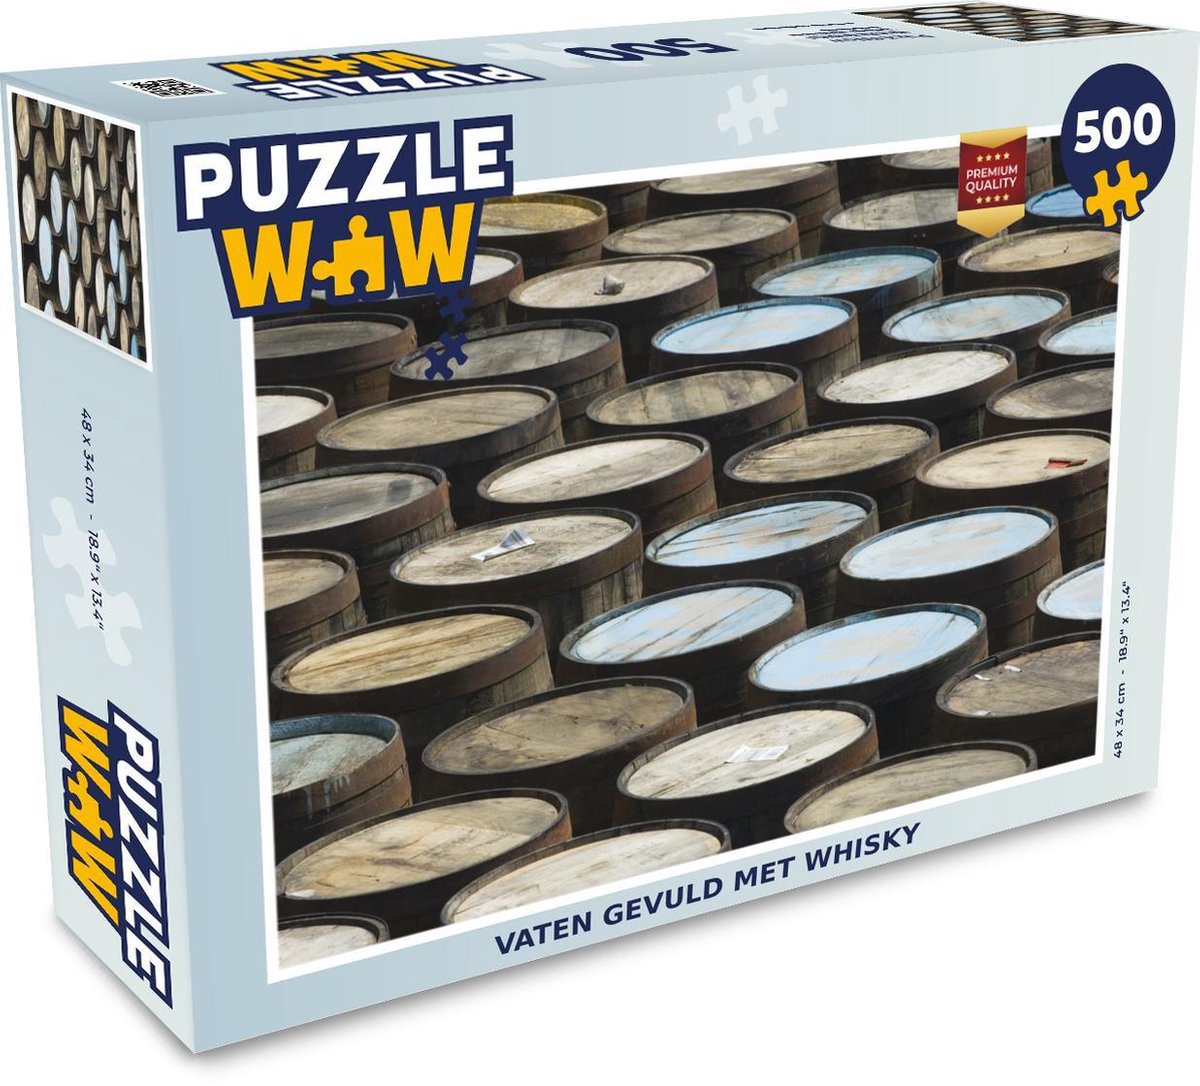 Afbeelding van product Puzzel 500 stukjes Whiskey - Vaten gevuld met whisky - PuzzleWow heeft +100000 puzzels